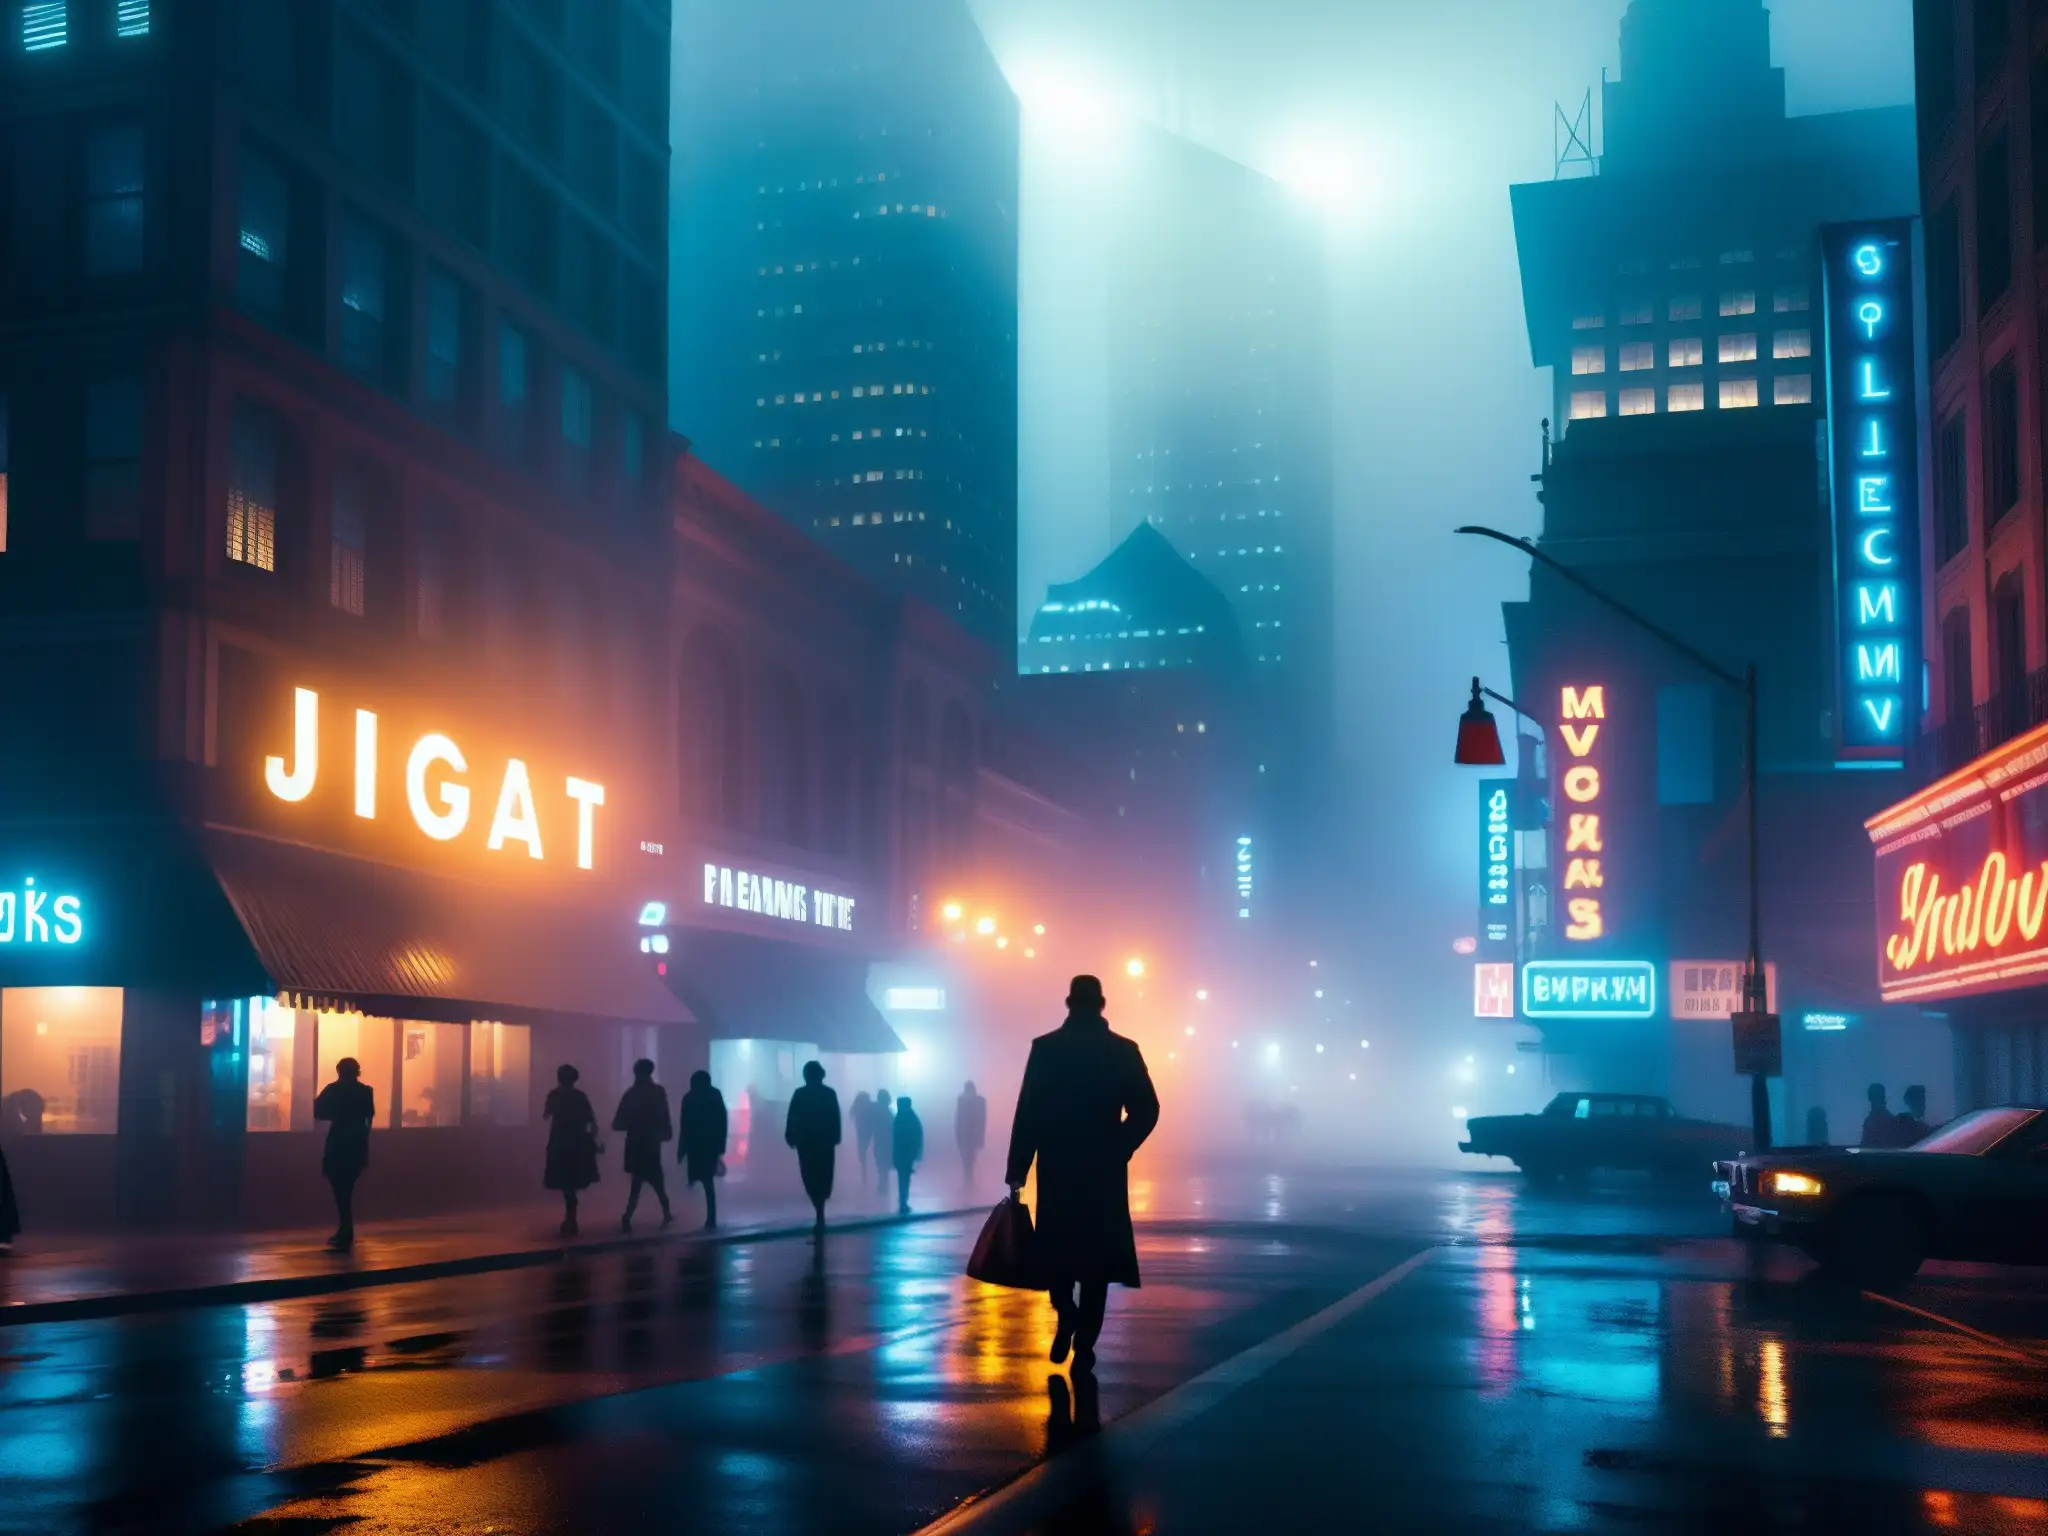 Una calle de la ciudad envuelta en niebla y supersticiones, con rascacielos en sombras